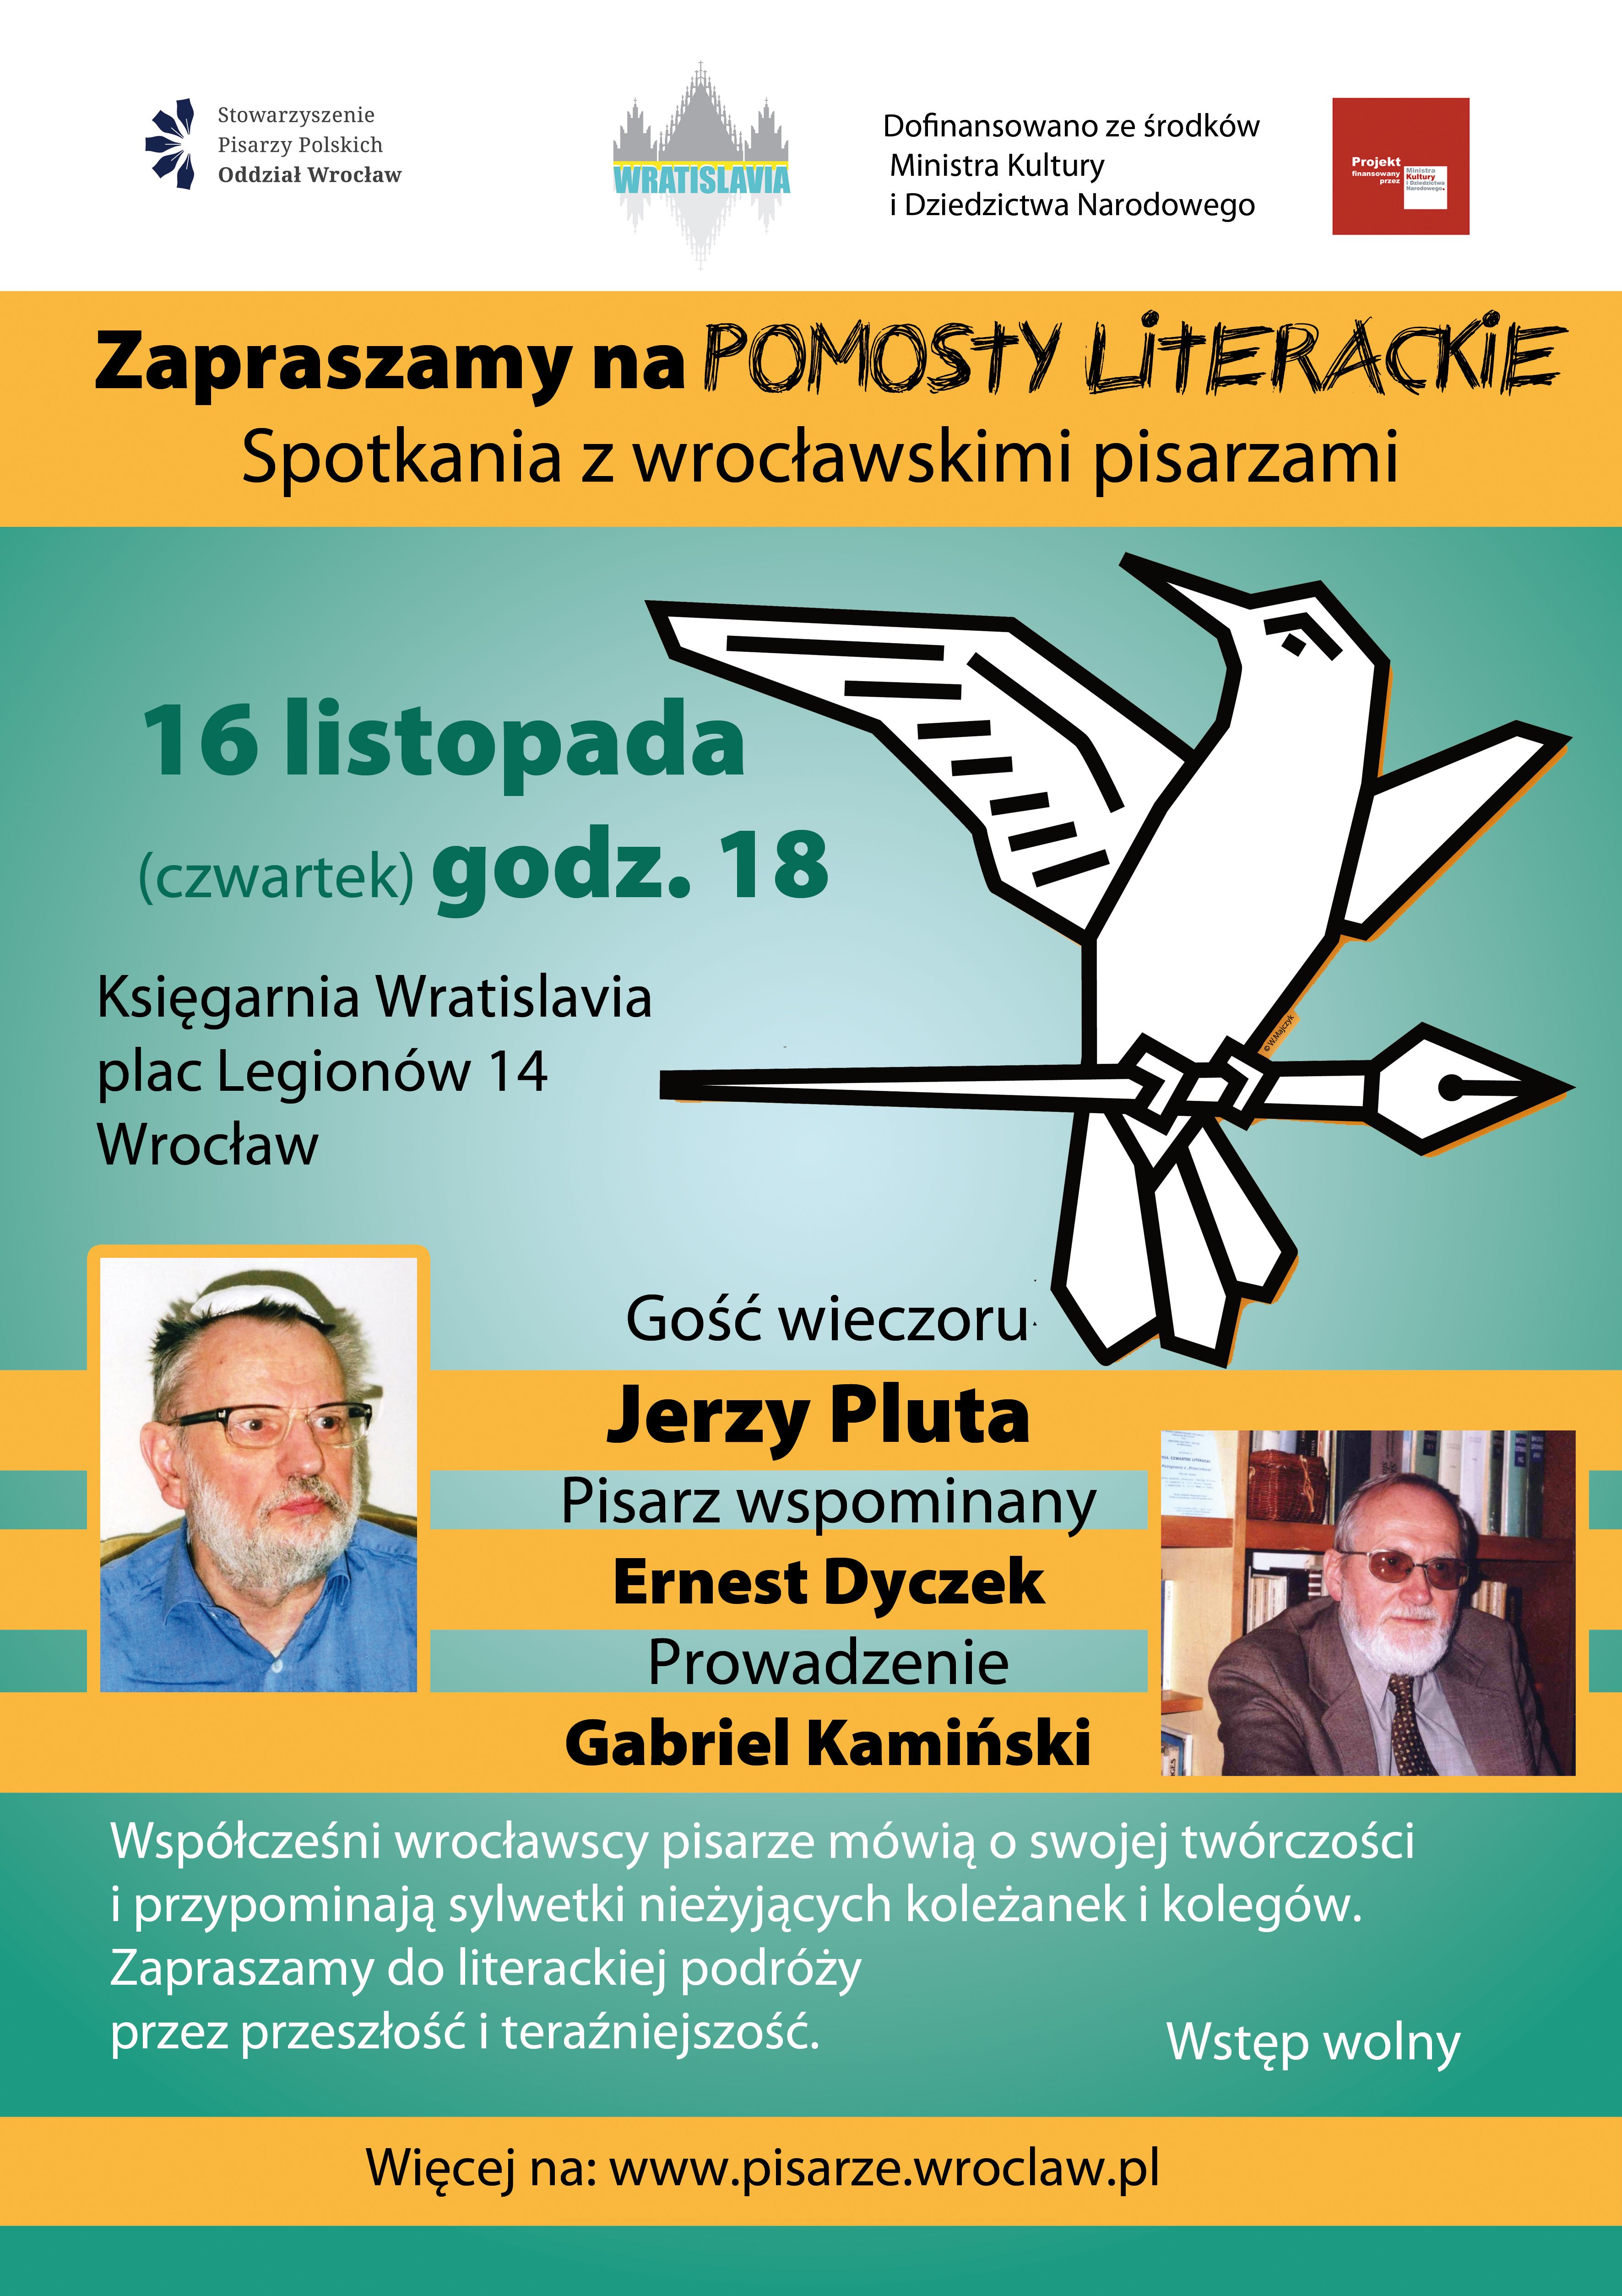 7. Pomosty Literackie, Jerzy Pluta, Ernest Dyczek, 